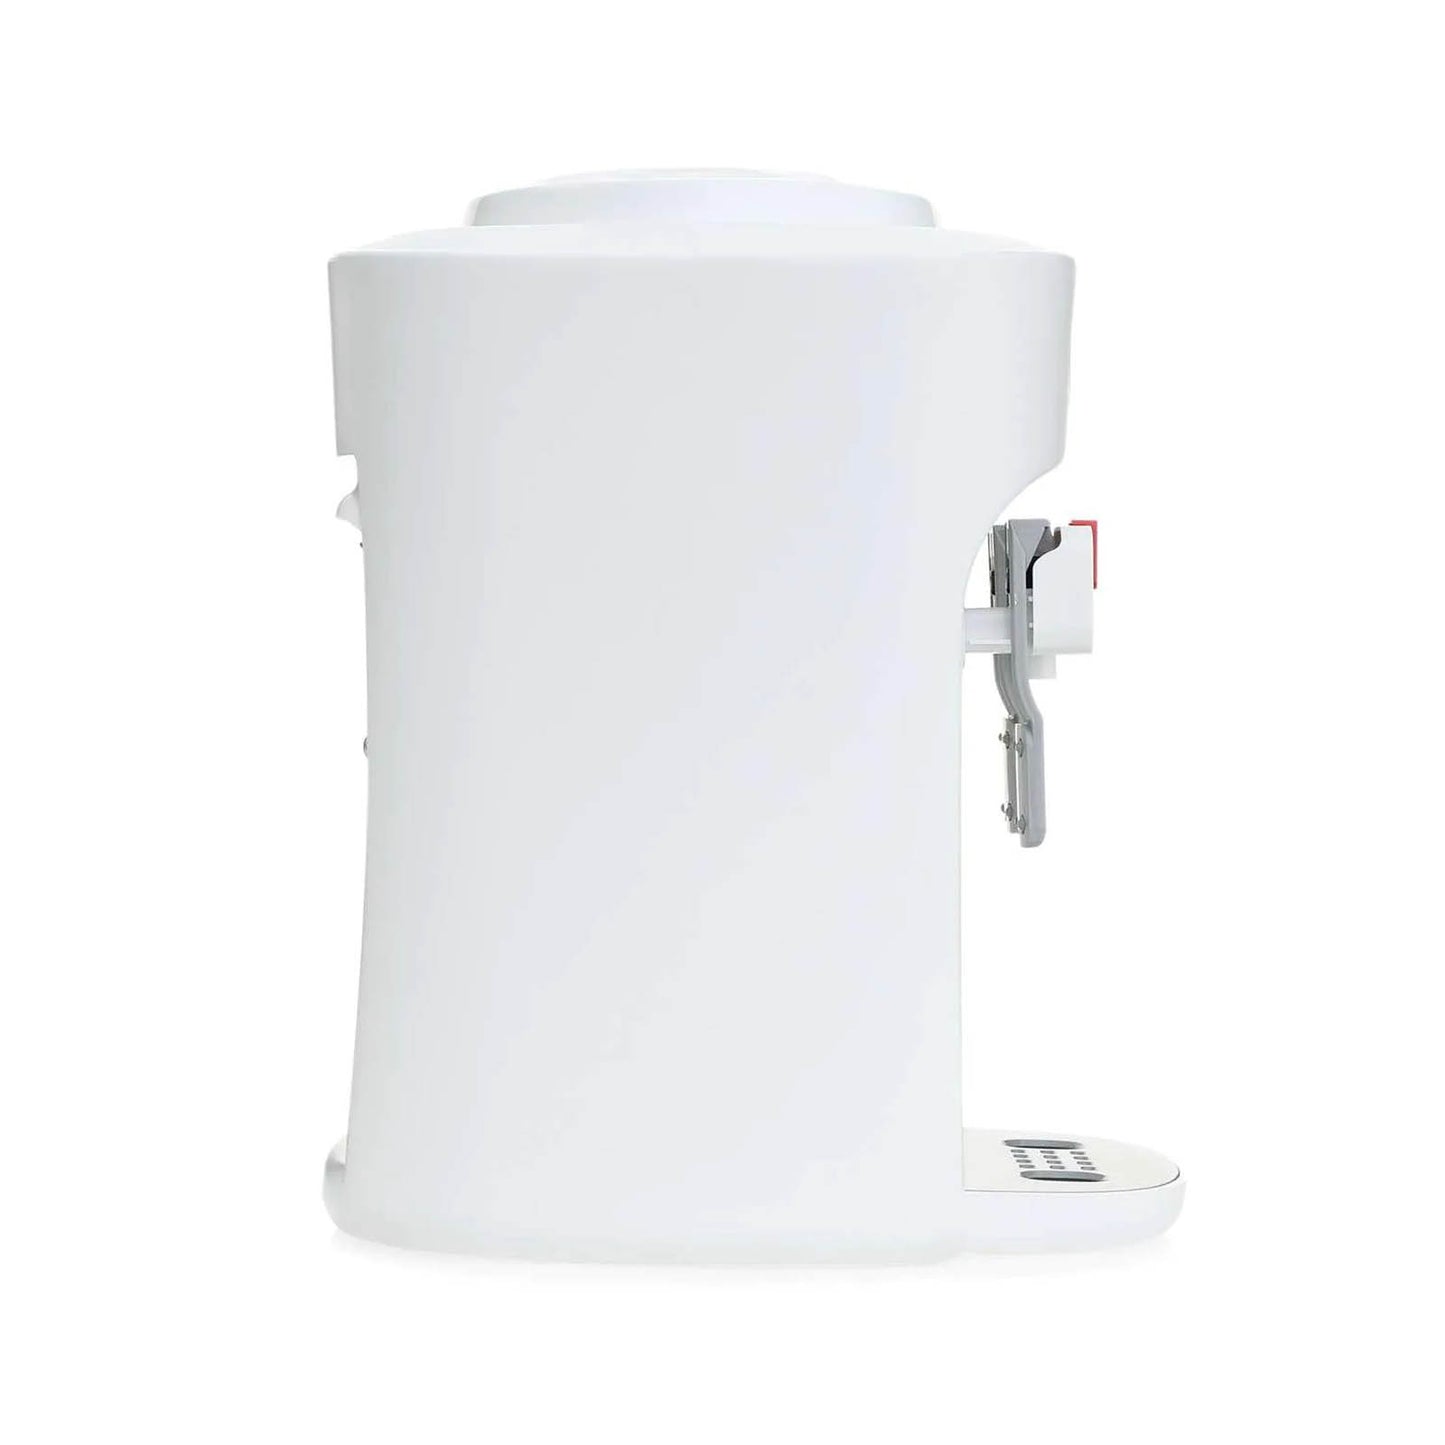 Dispensador de Agua Fria / Caliente Mabe EMM2PB